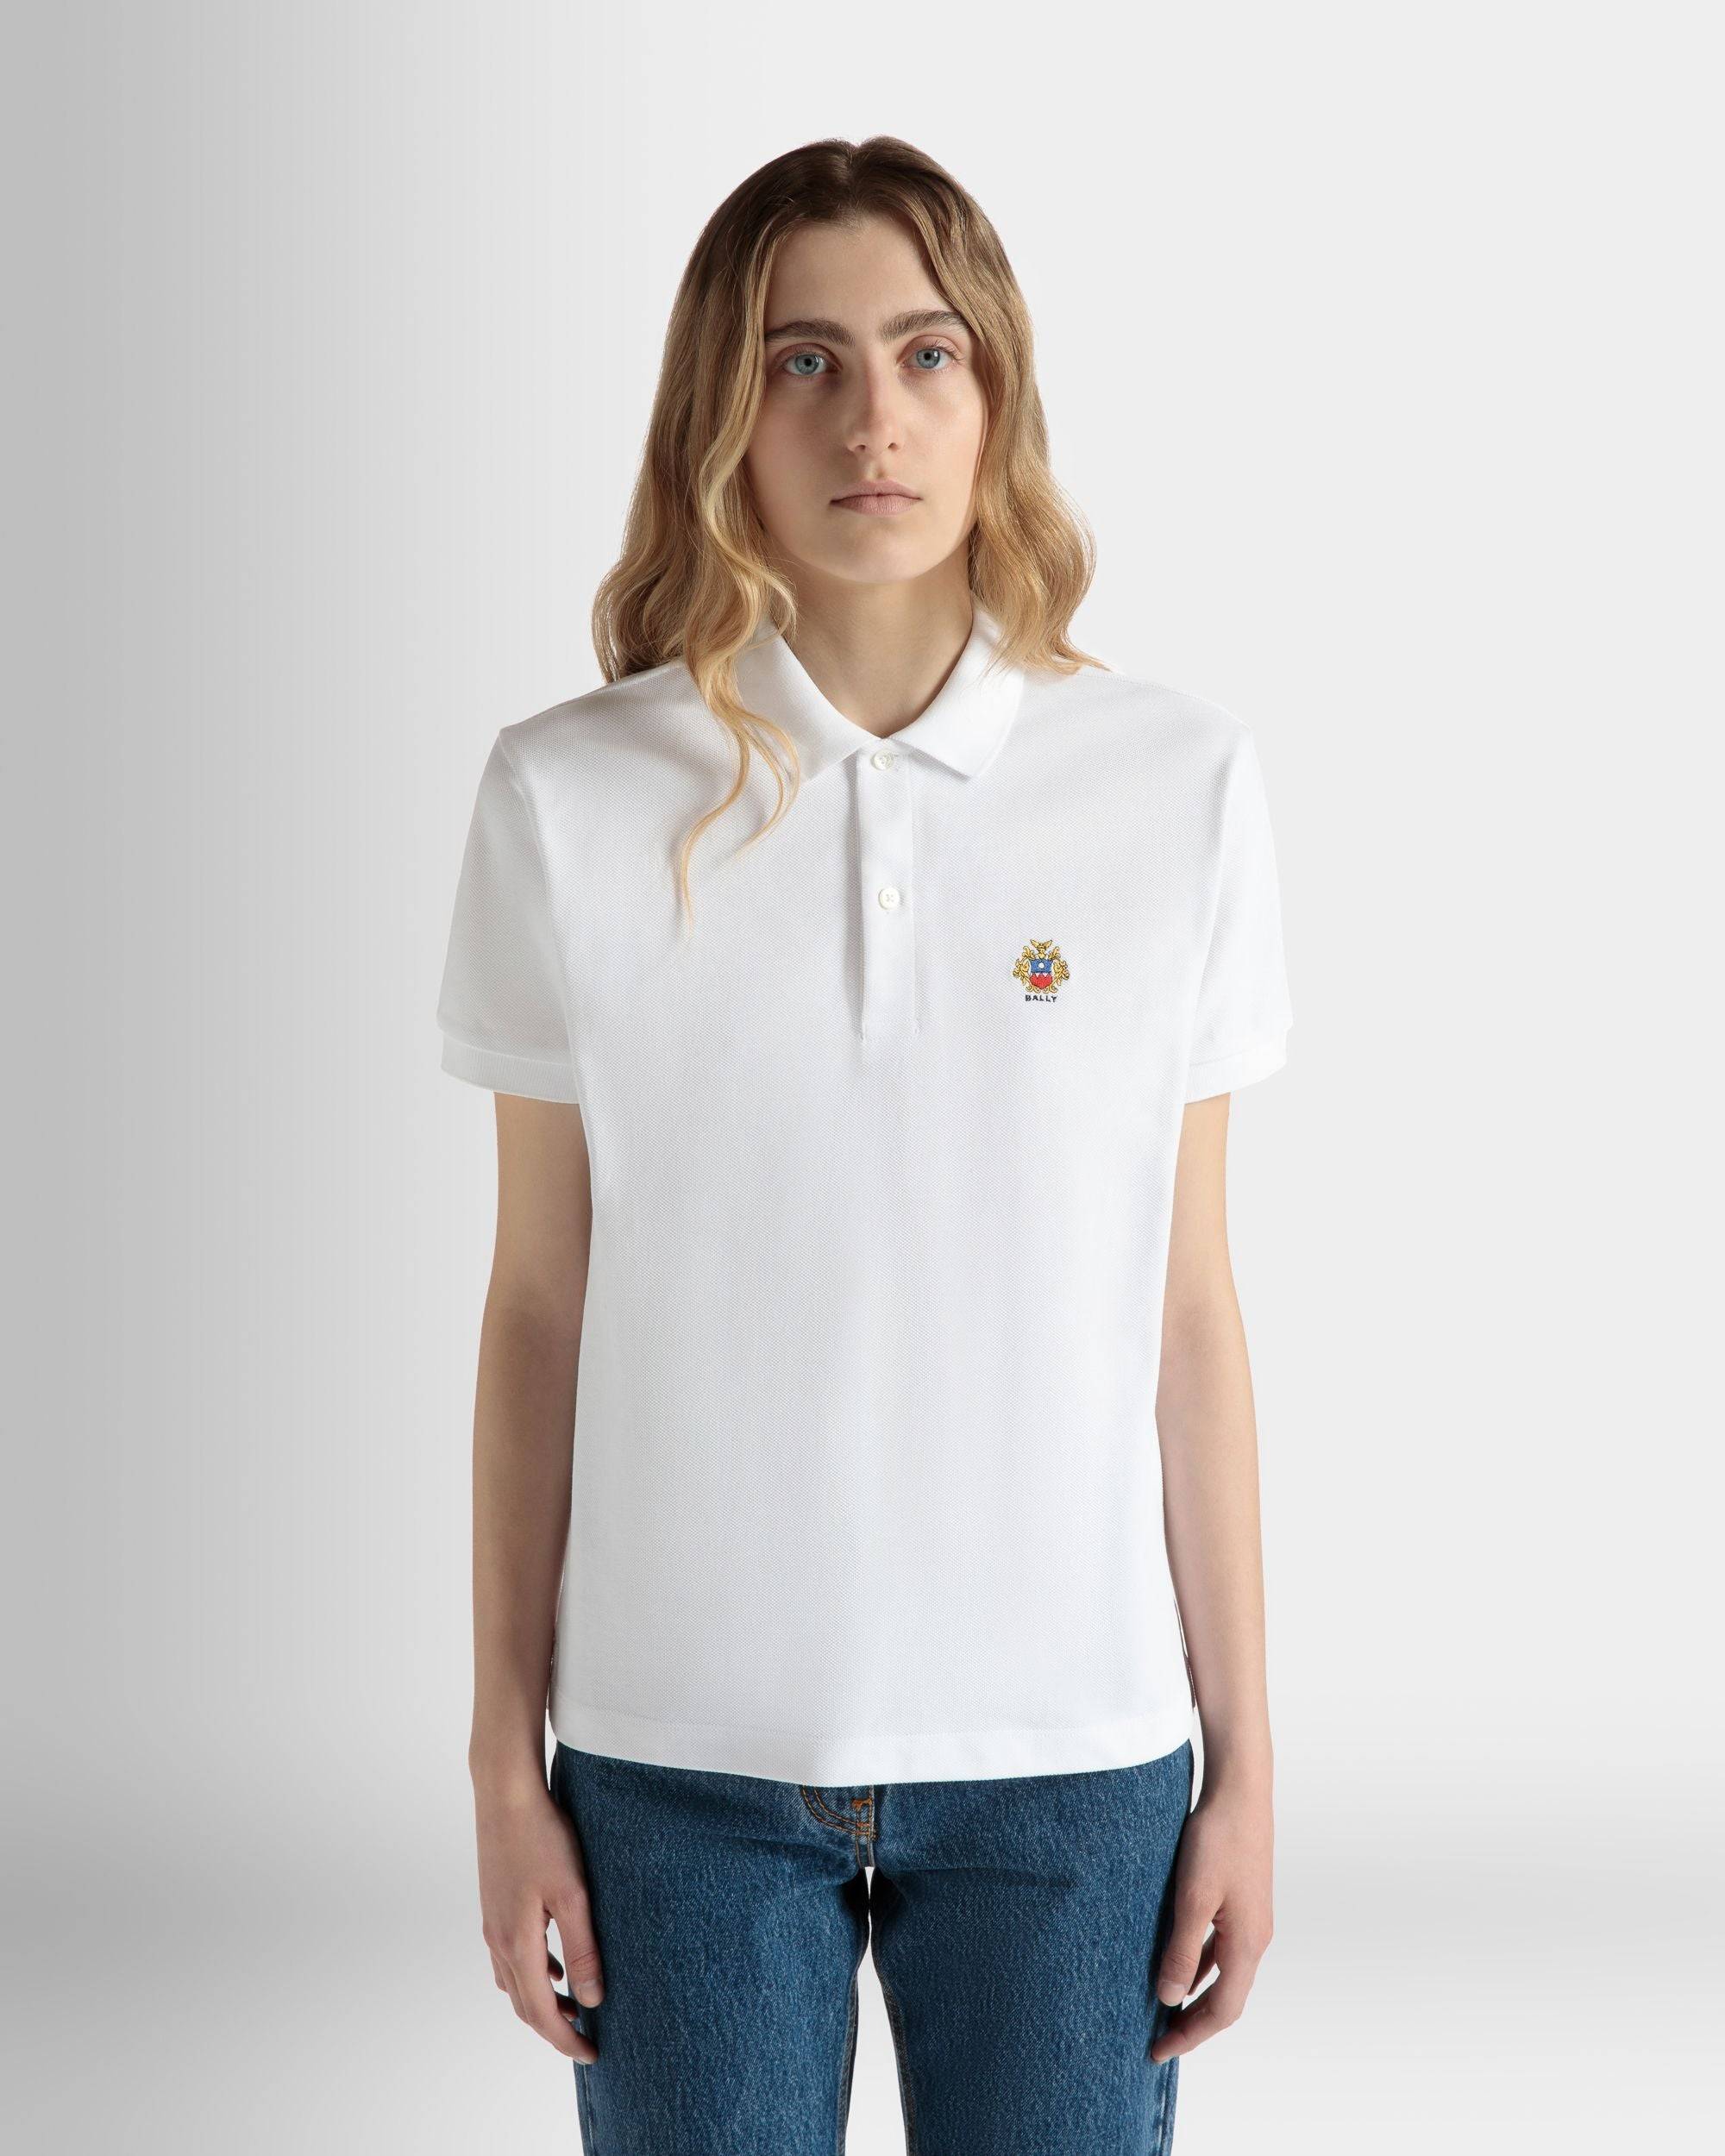 Kurzärmeliges Poloshirt Aus Baumwolle In Weiß - Damen - Bally - 03